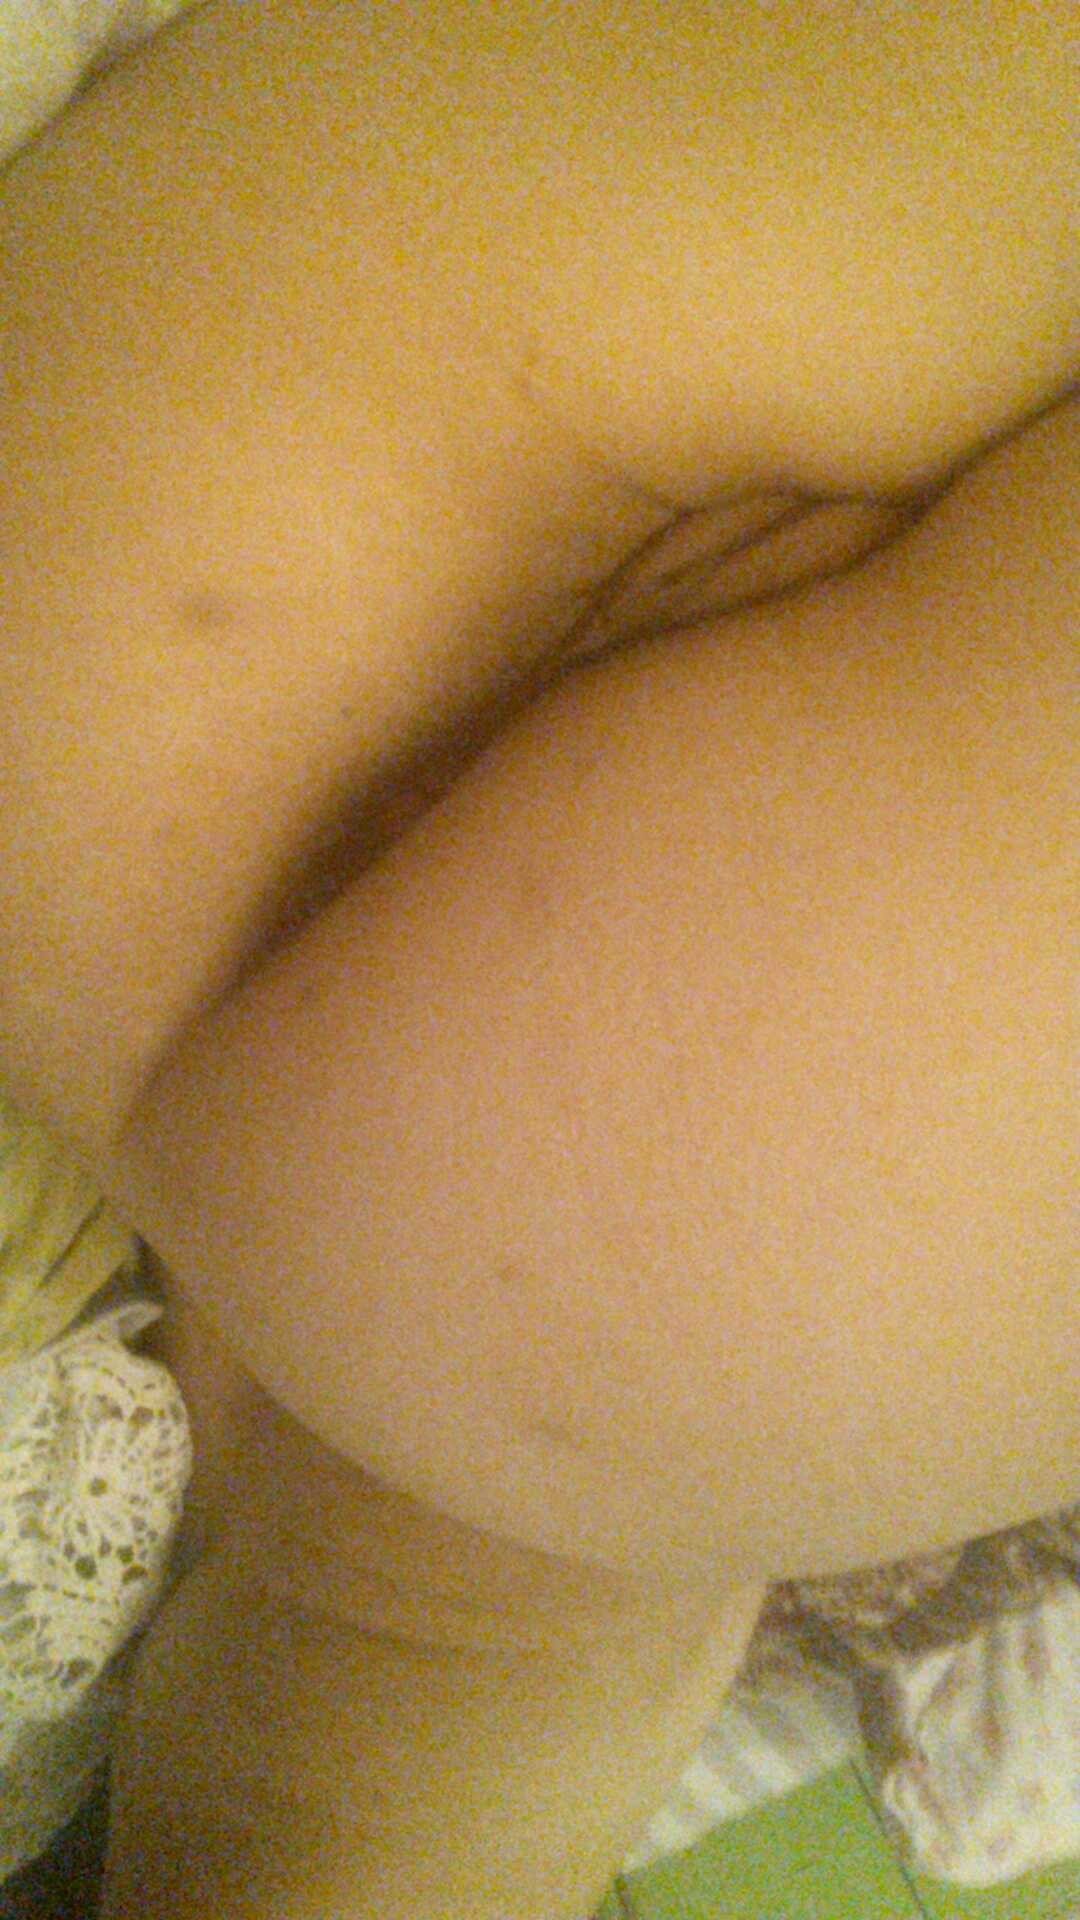 Big Tits Asian Vivian